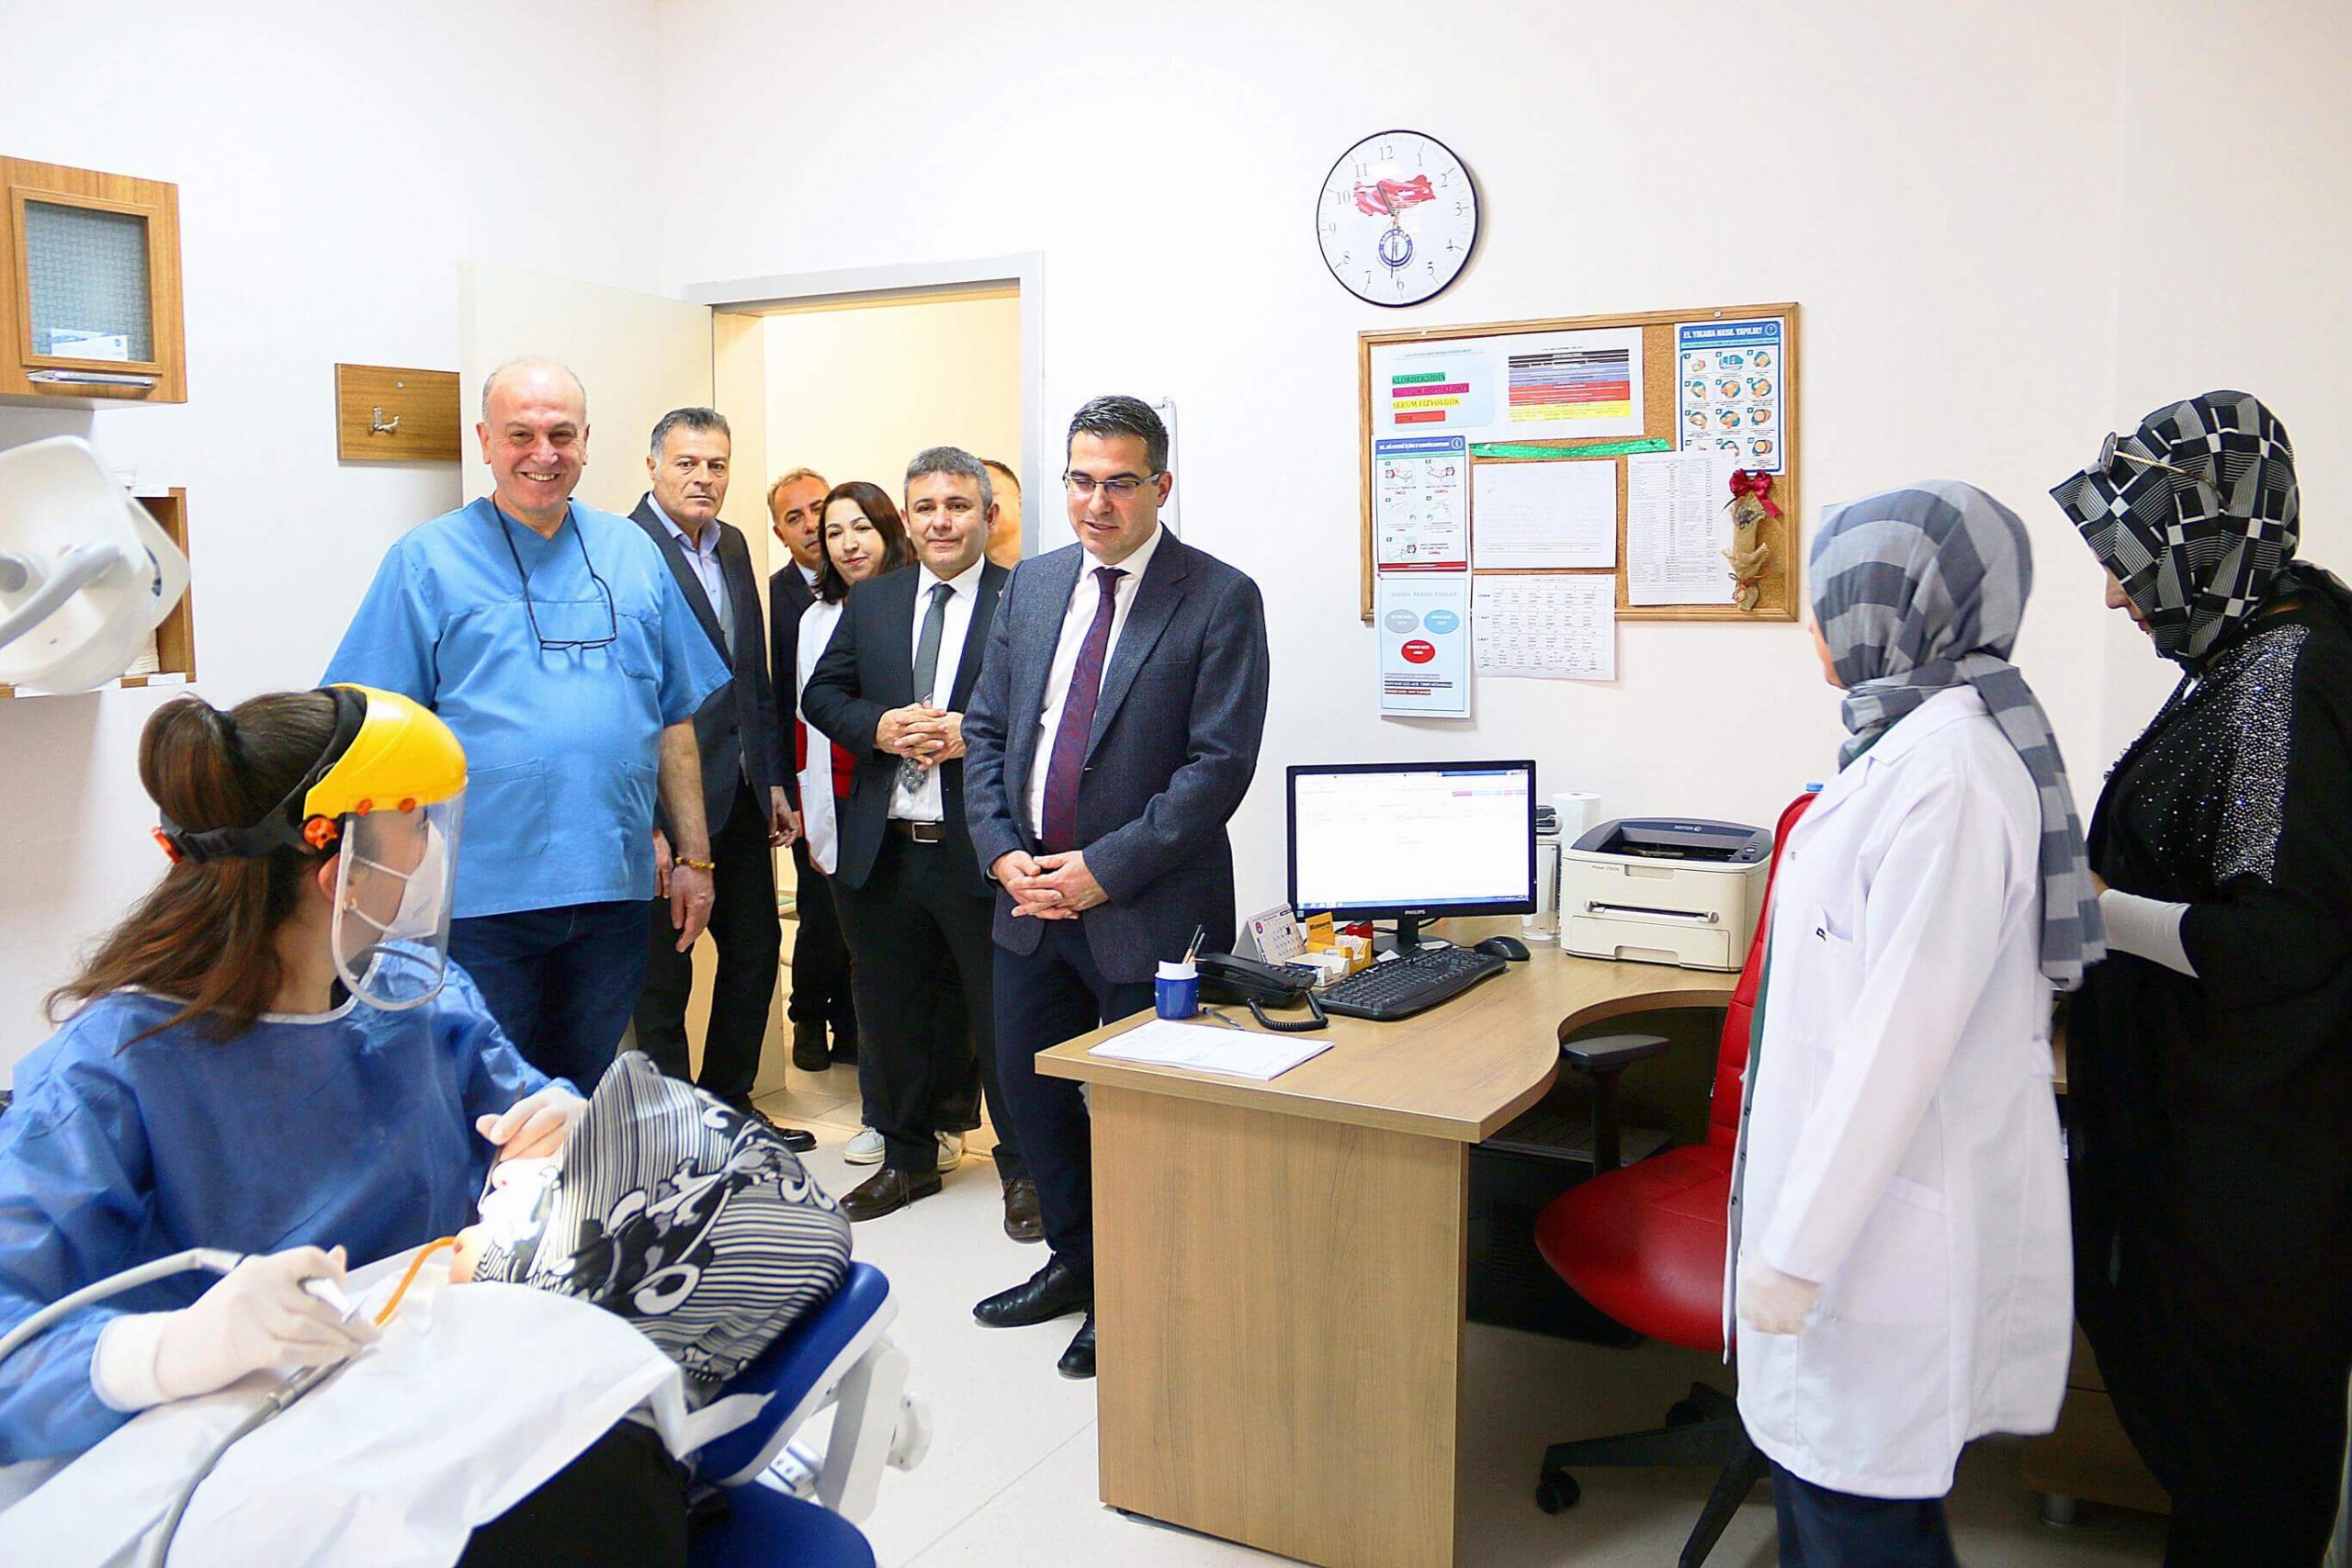 murat-agirtas-dis-hekimler-gunu-kutlama-2-scaled Kırıkkale İl Sağlık Müdürü Murat Ağırtaş'tan Diş Hekimlerine Anlamlı Ziyaret